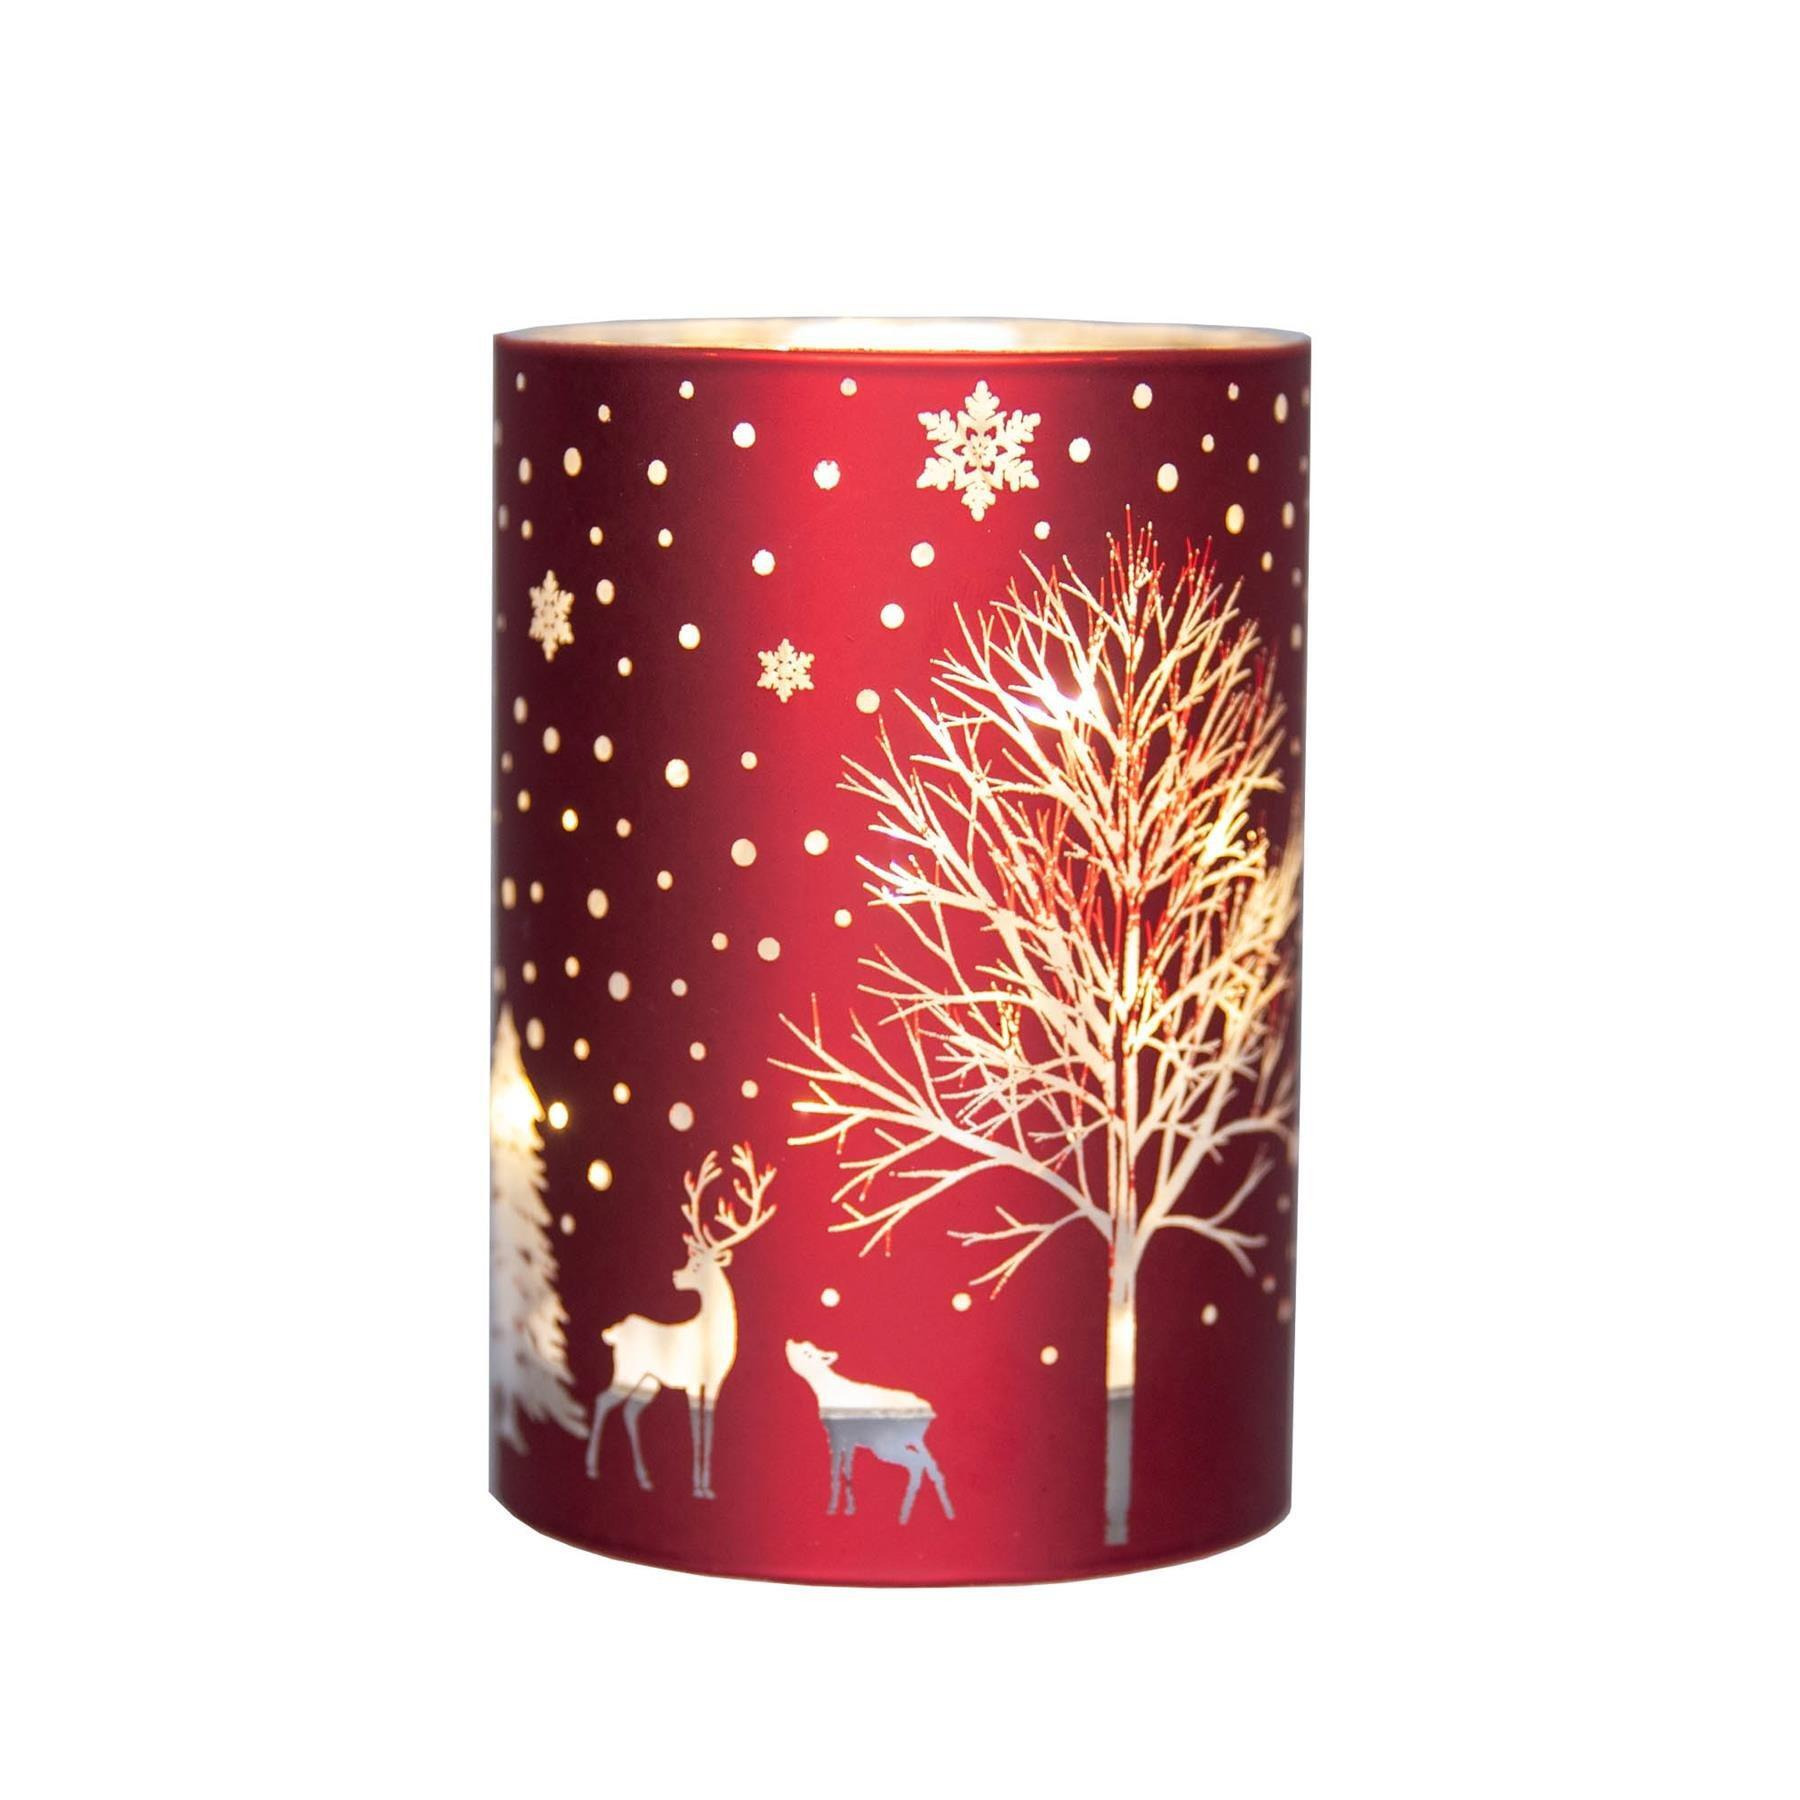 12cm Christmas Decorated Vase Led Red Glass Vase / Tree - image 1